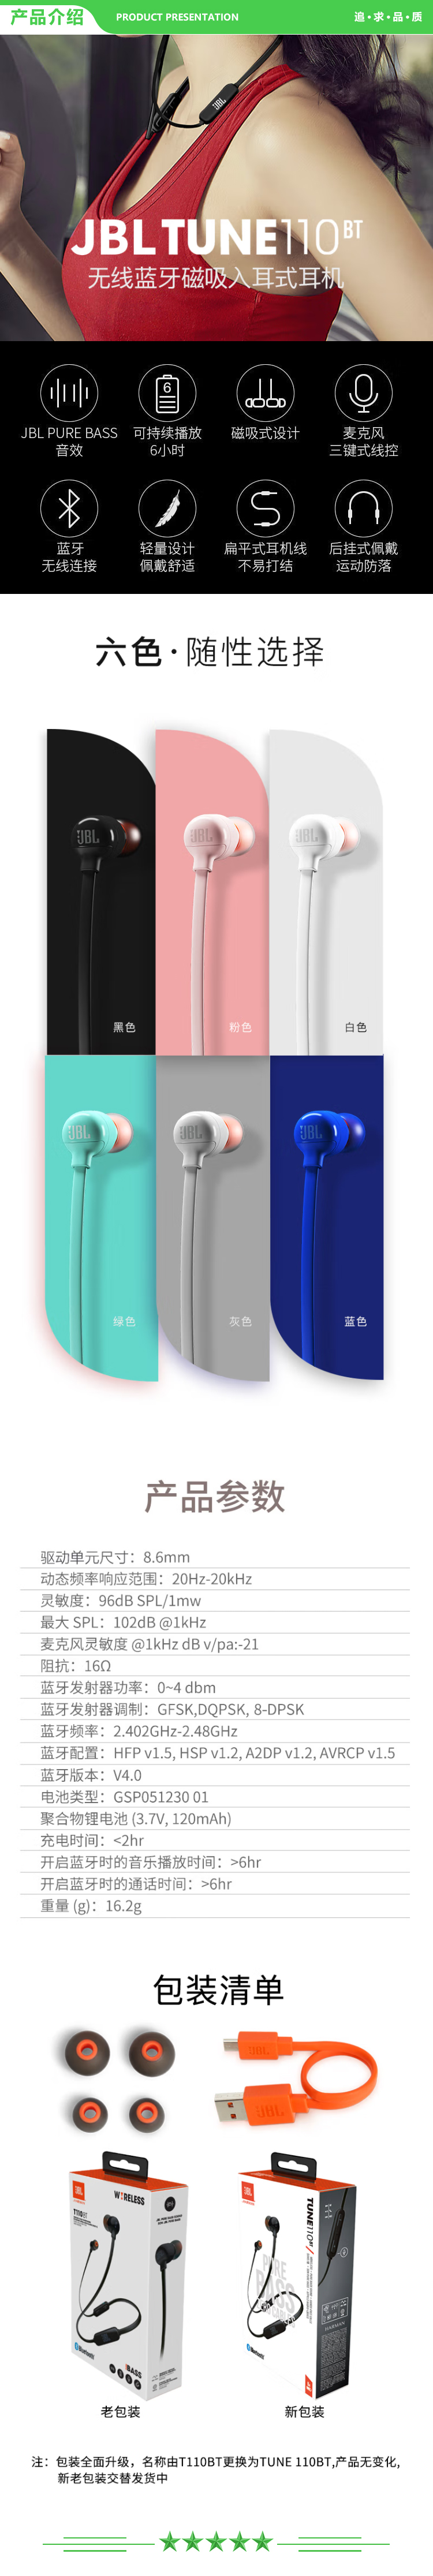 JBL TUNE 110BT 蓝牙无线耳机 运动音乐游戏耳机 苹果华为小米入耳式耳机 带麦可通话 蓝色 .jpg